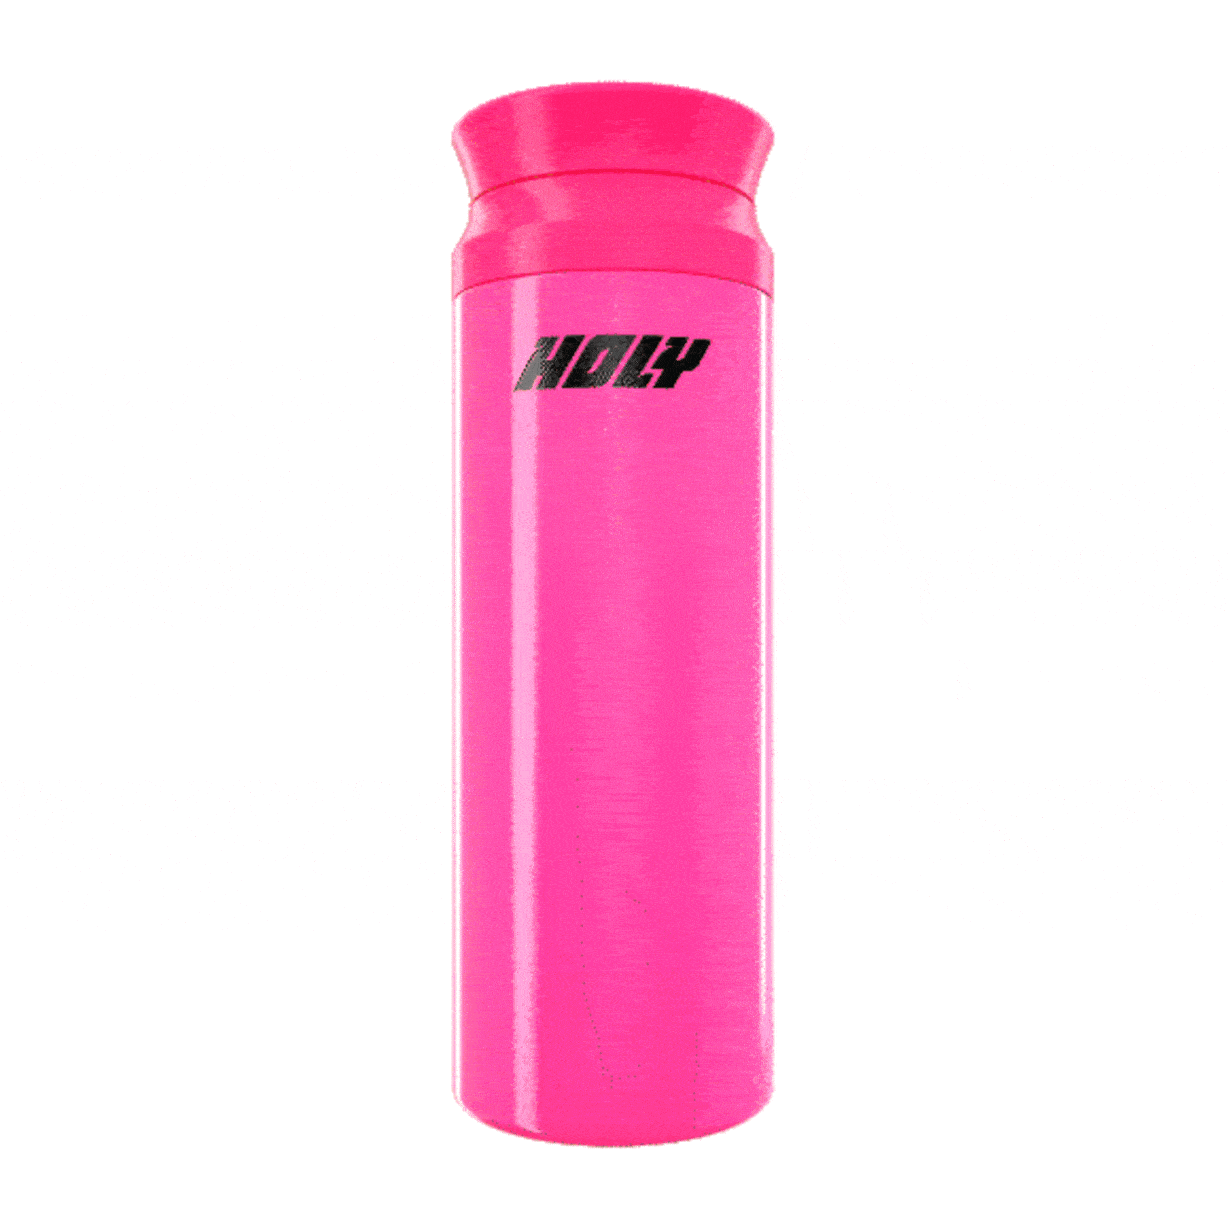 Color Changing Shaker – Orange/Pink